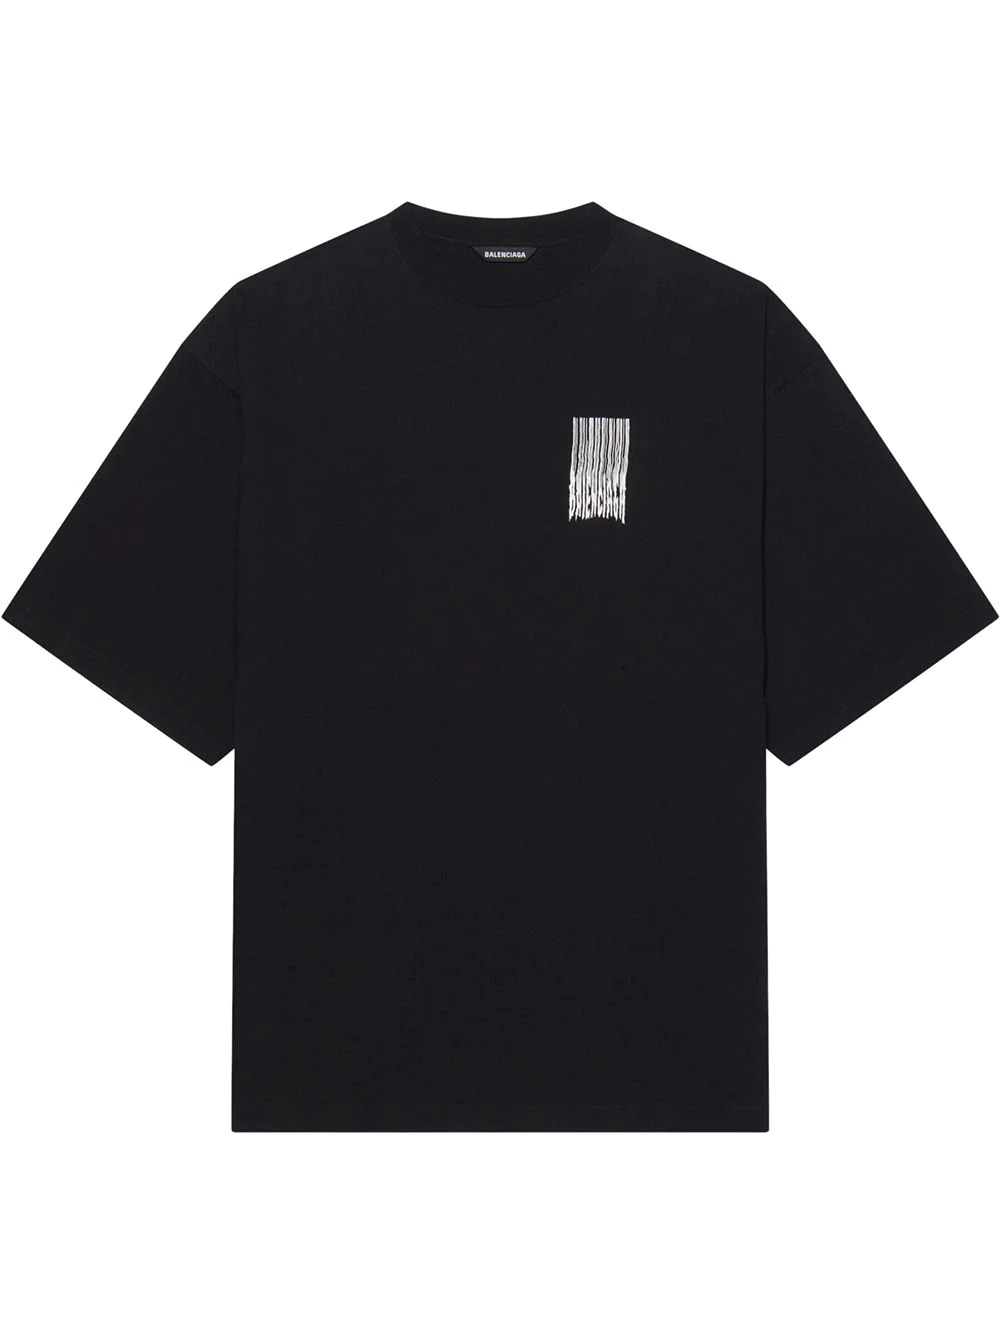 Kurzarm-T-Shirt mit Logodruck